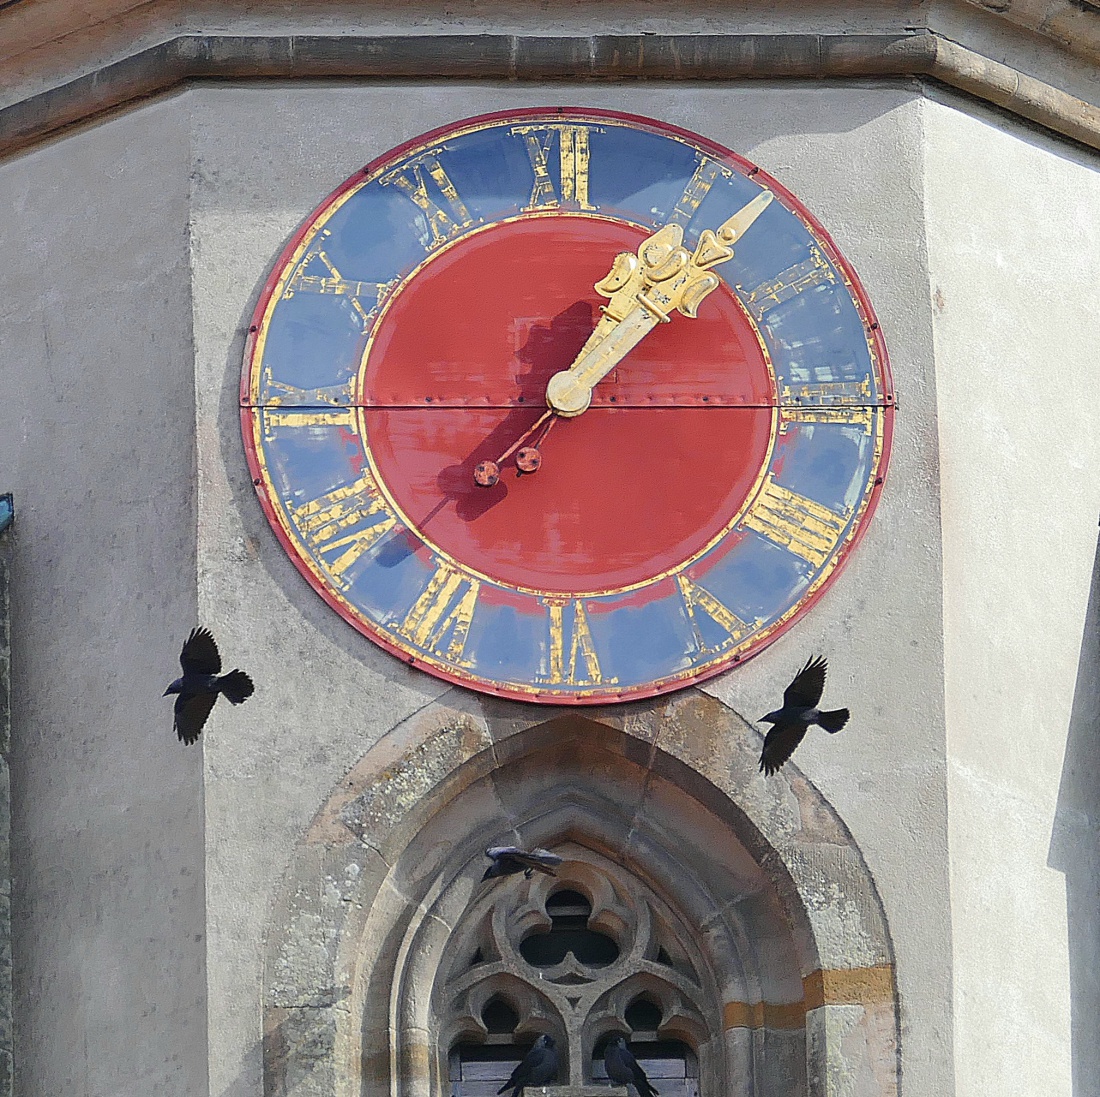 Foto: Martin Zehrer - Die Kirchturm-Uhr der kemnather Kirche.<br />
Im Vorbeiflug zwei Dohlen... 